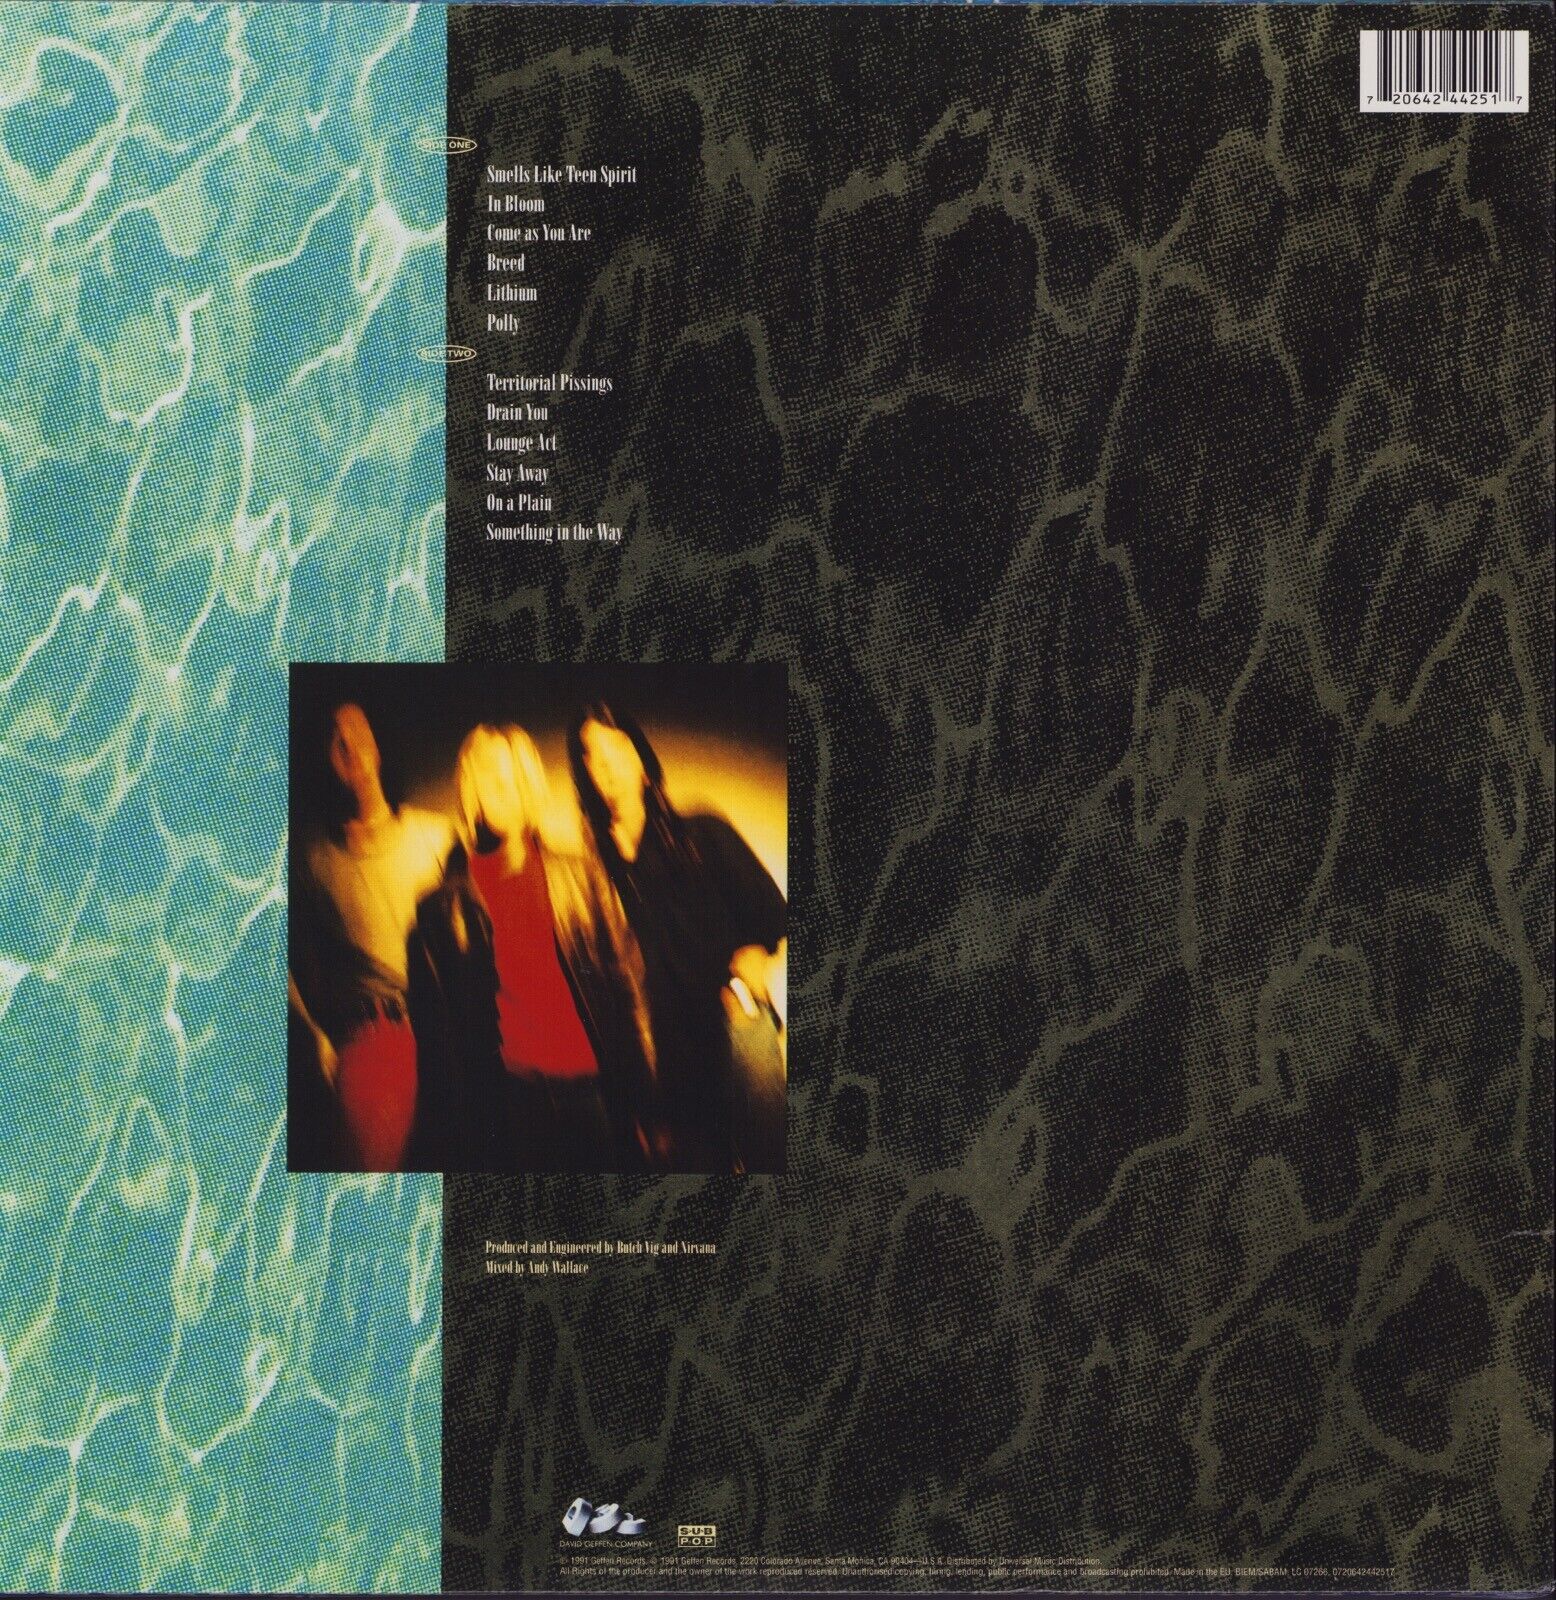 Nirvana ‎– Nevermind Vinyl LP